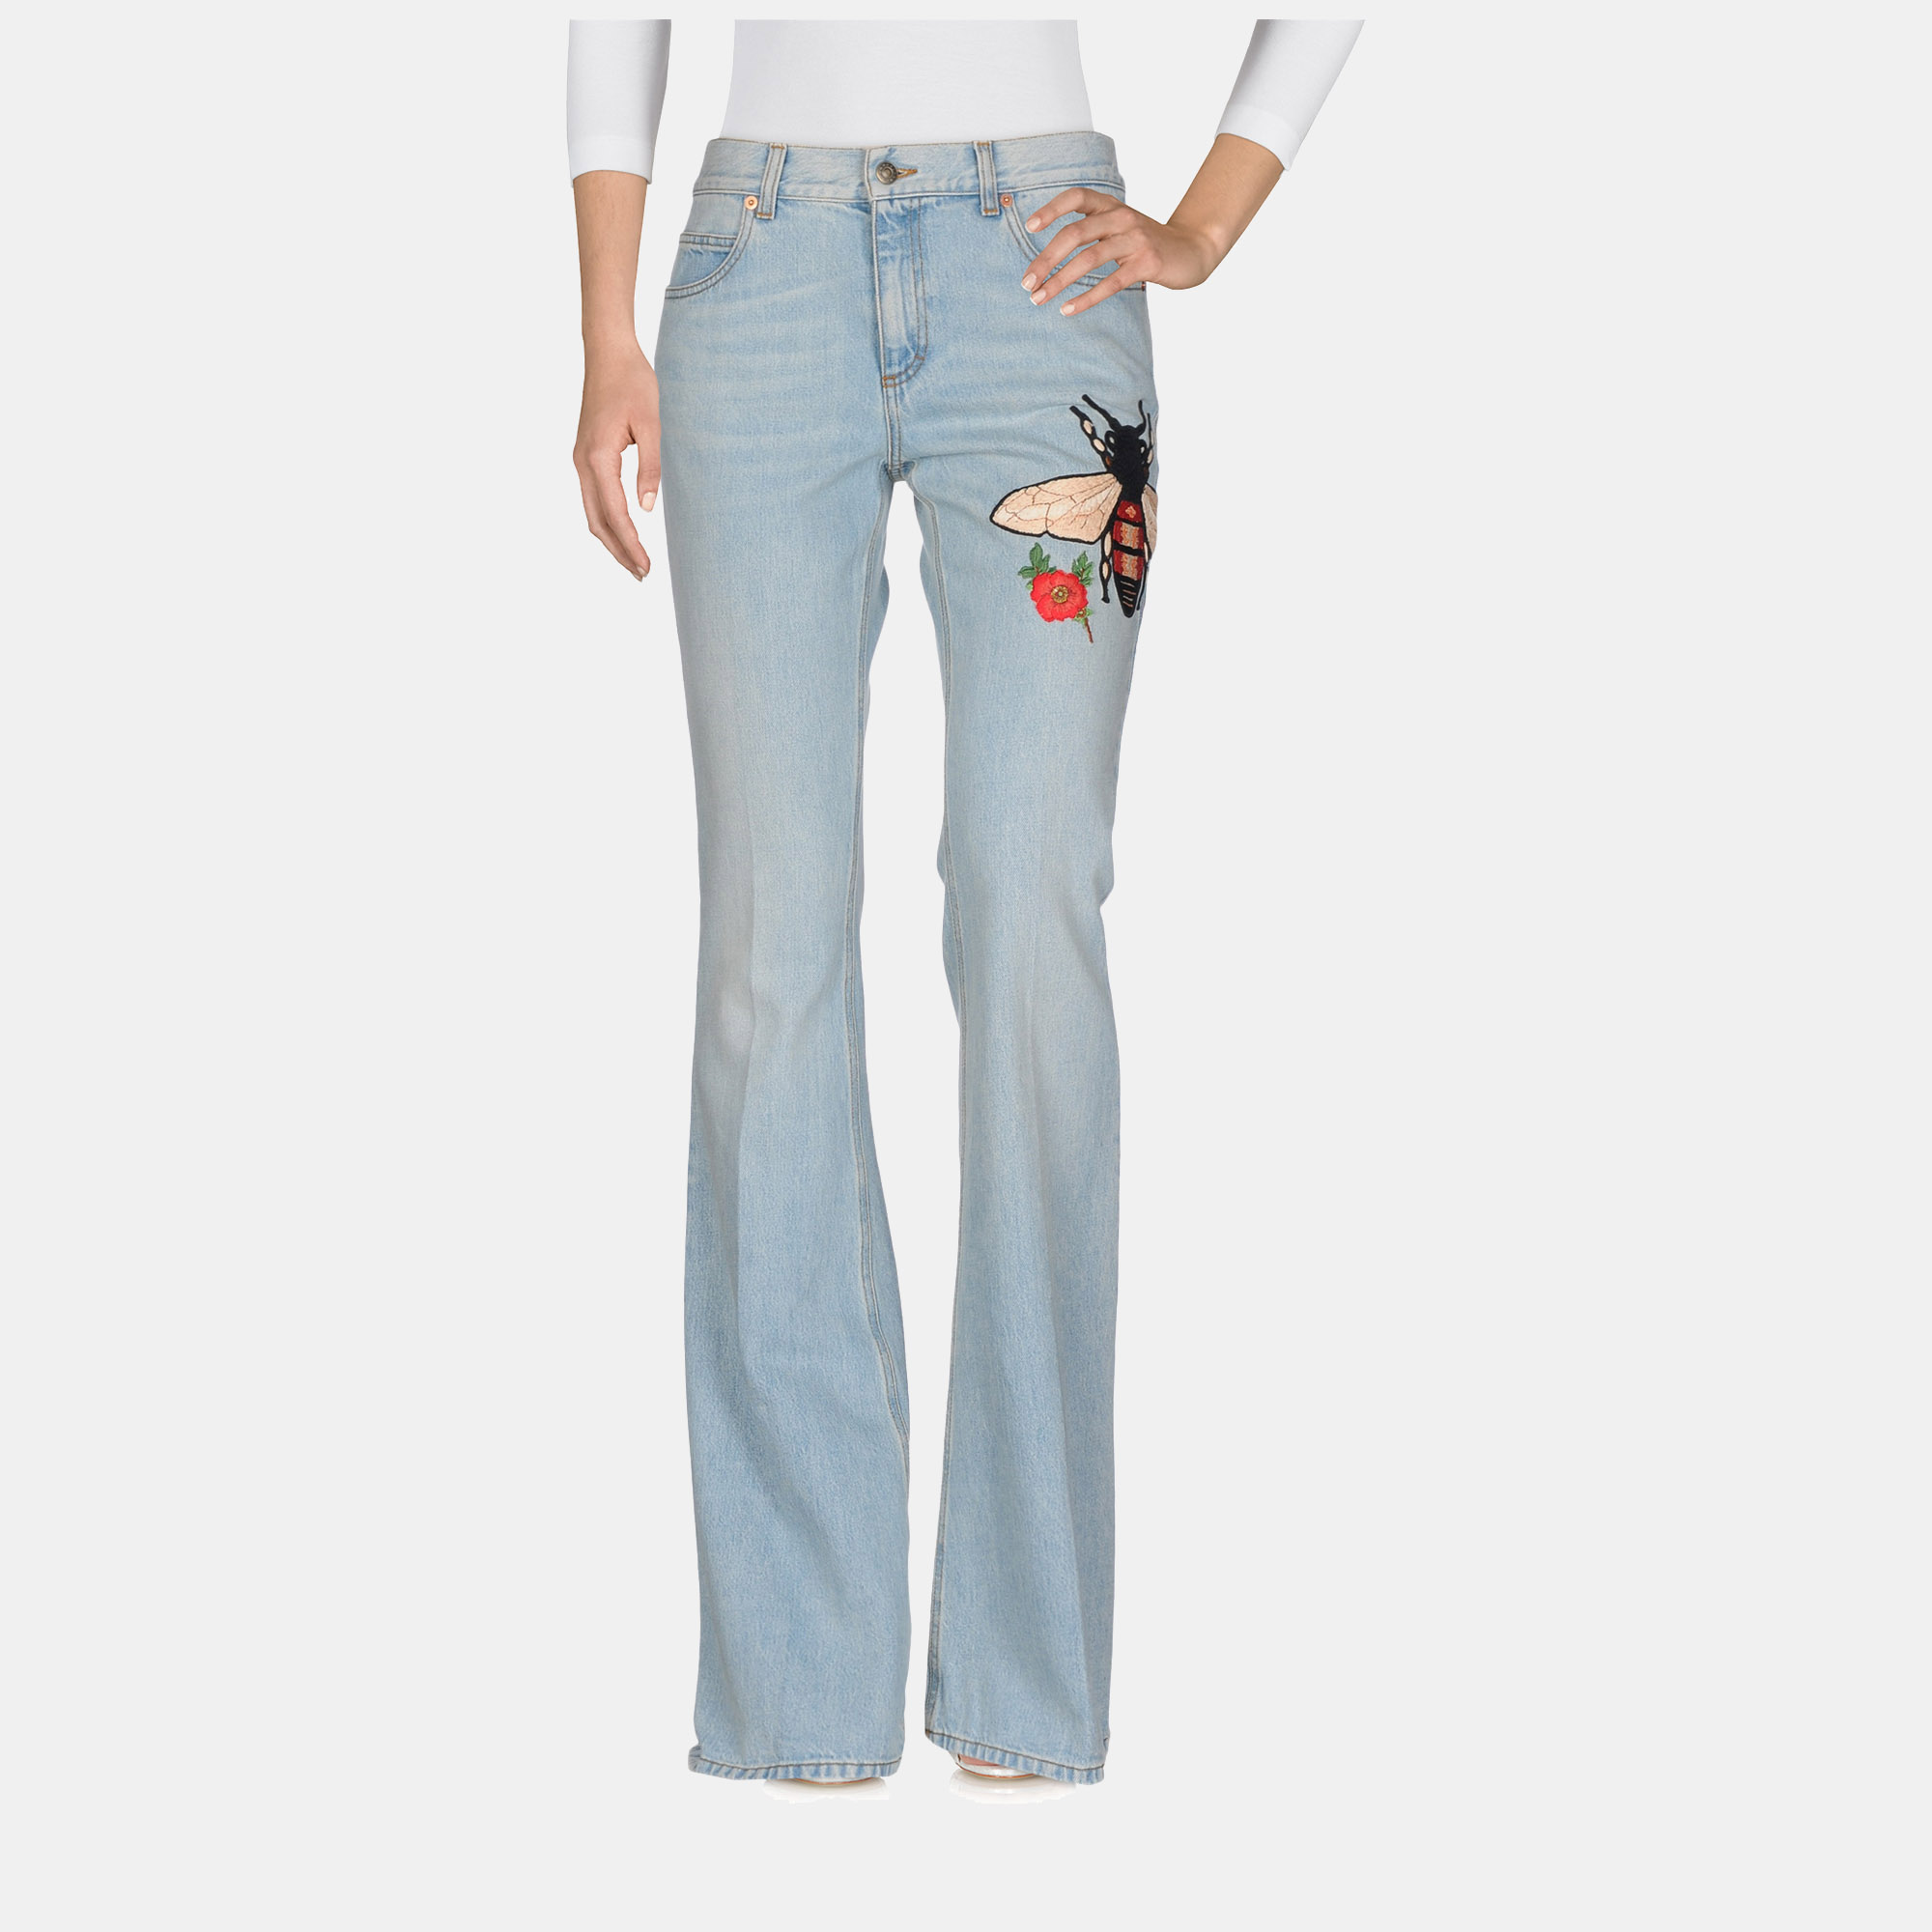 Gucci cotton jeans 31